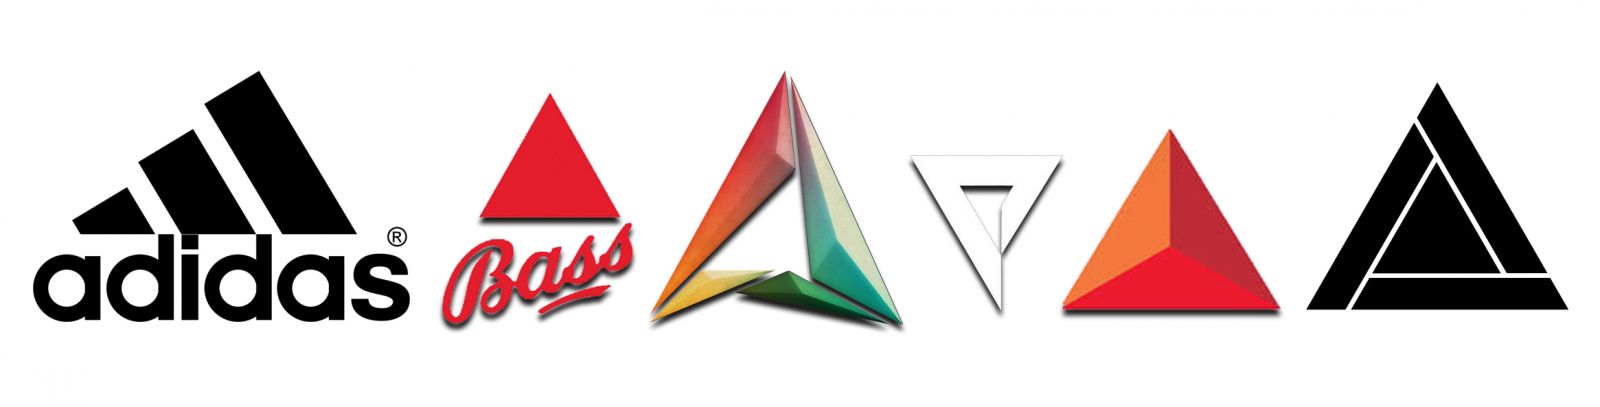 Thiết kế logo hình tam giác của adidas